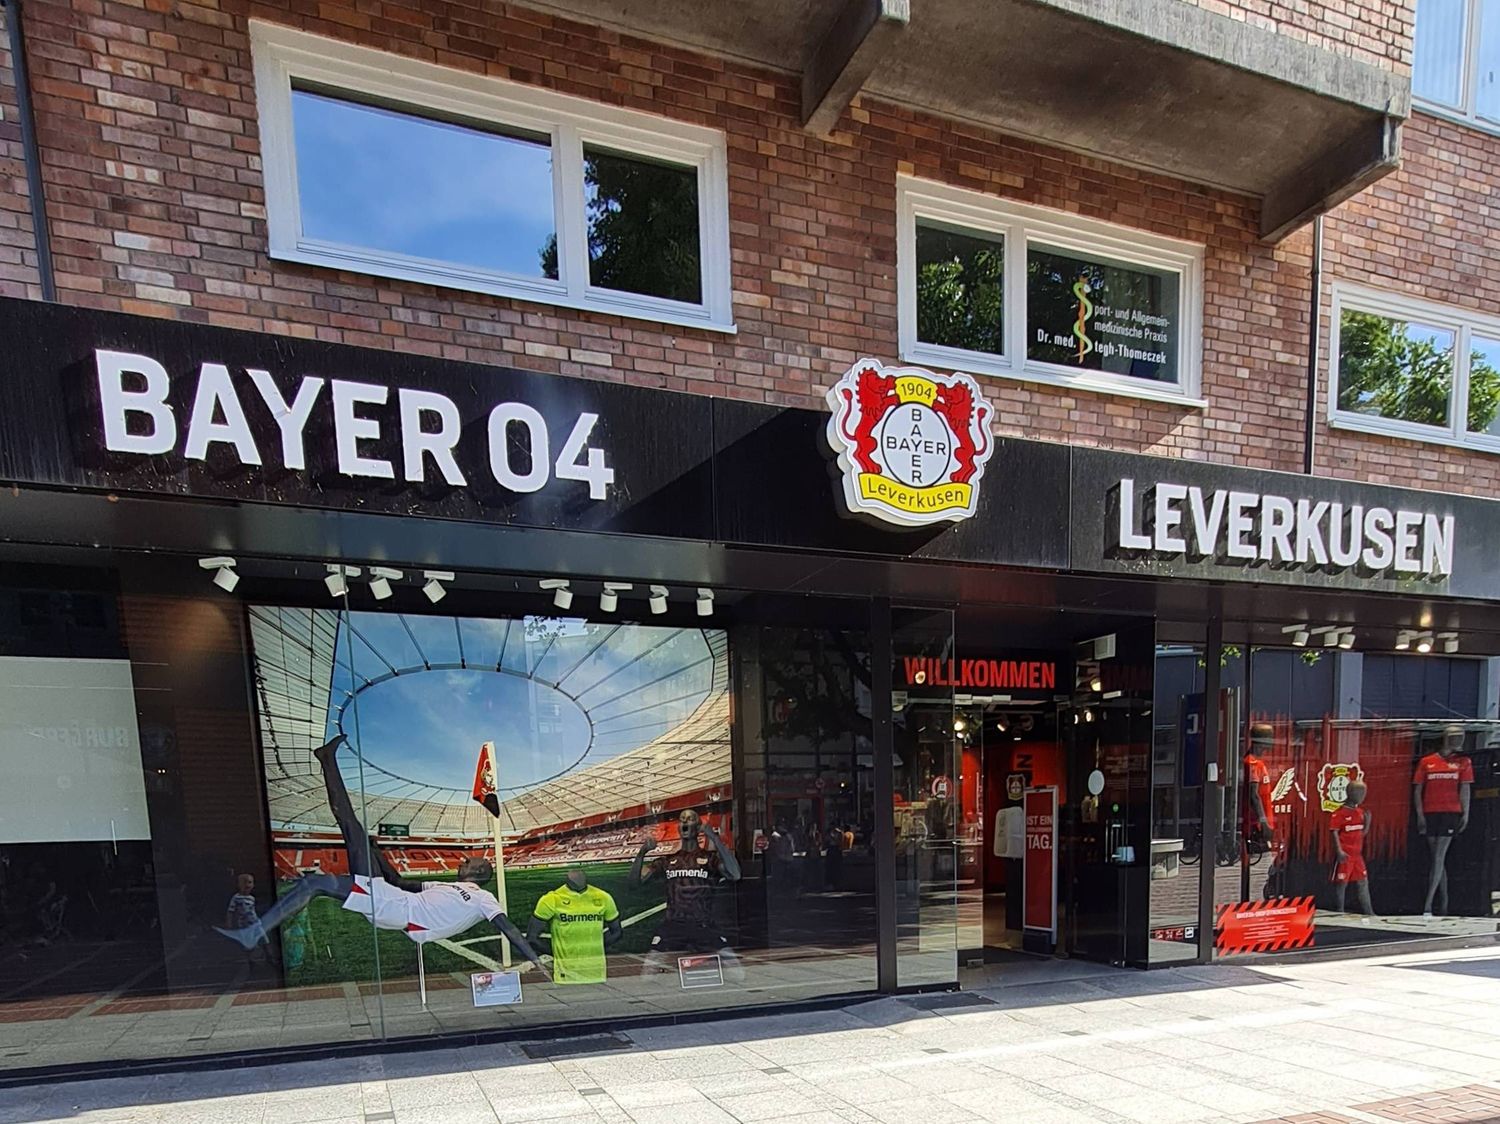 Bilder und Fotos zu Bayer 04-Shop Leverkusen City in Leverkusen, Wiesdorfer  Platz